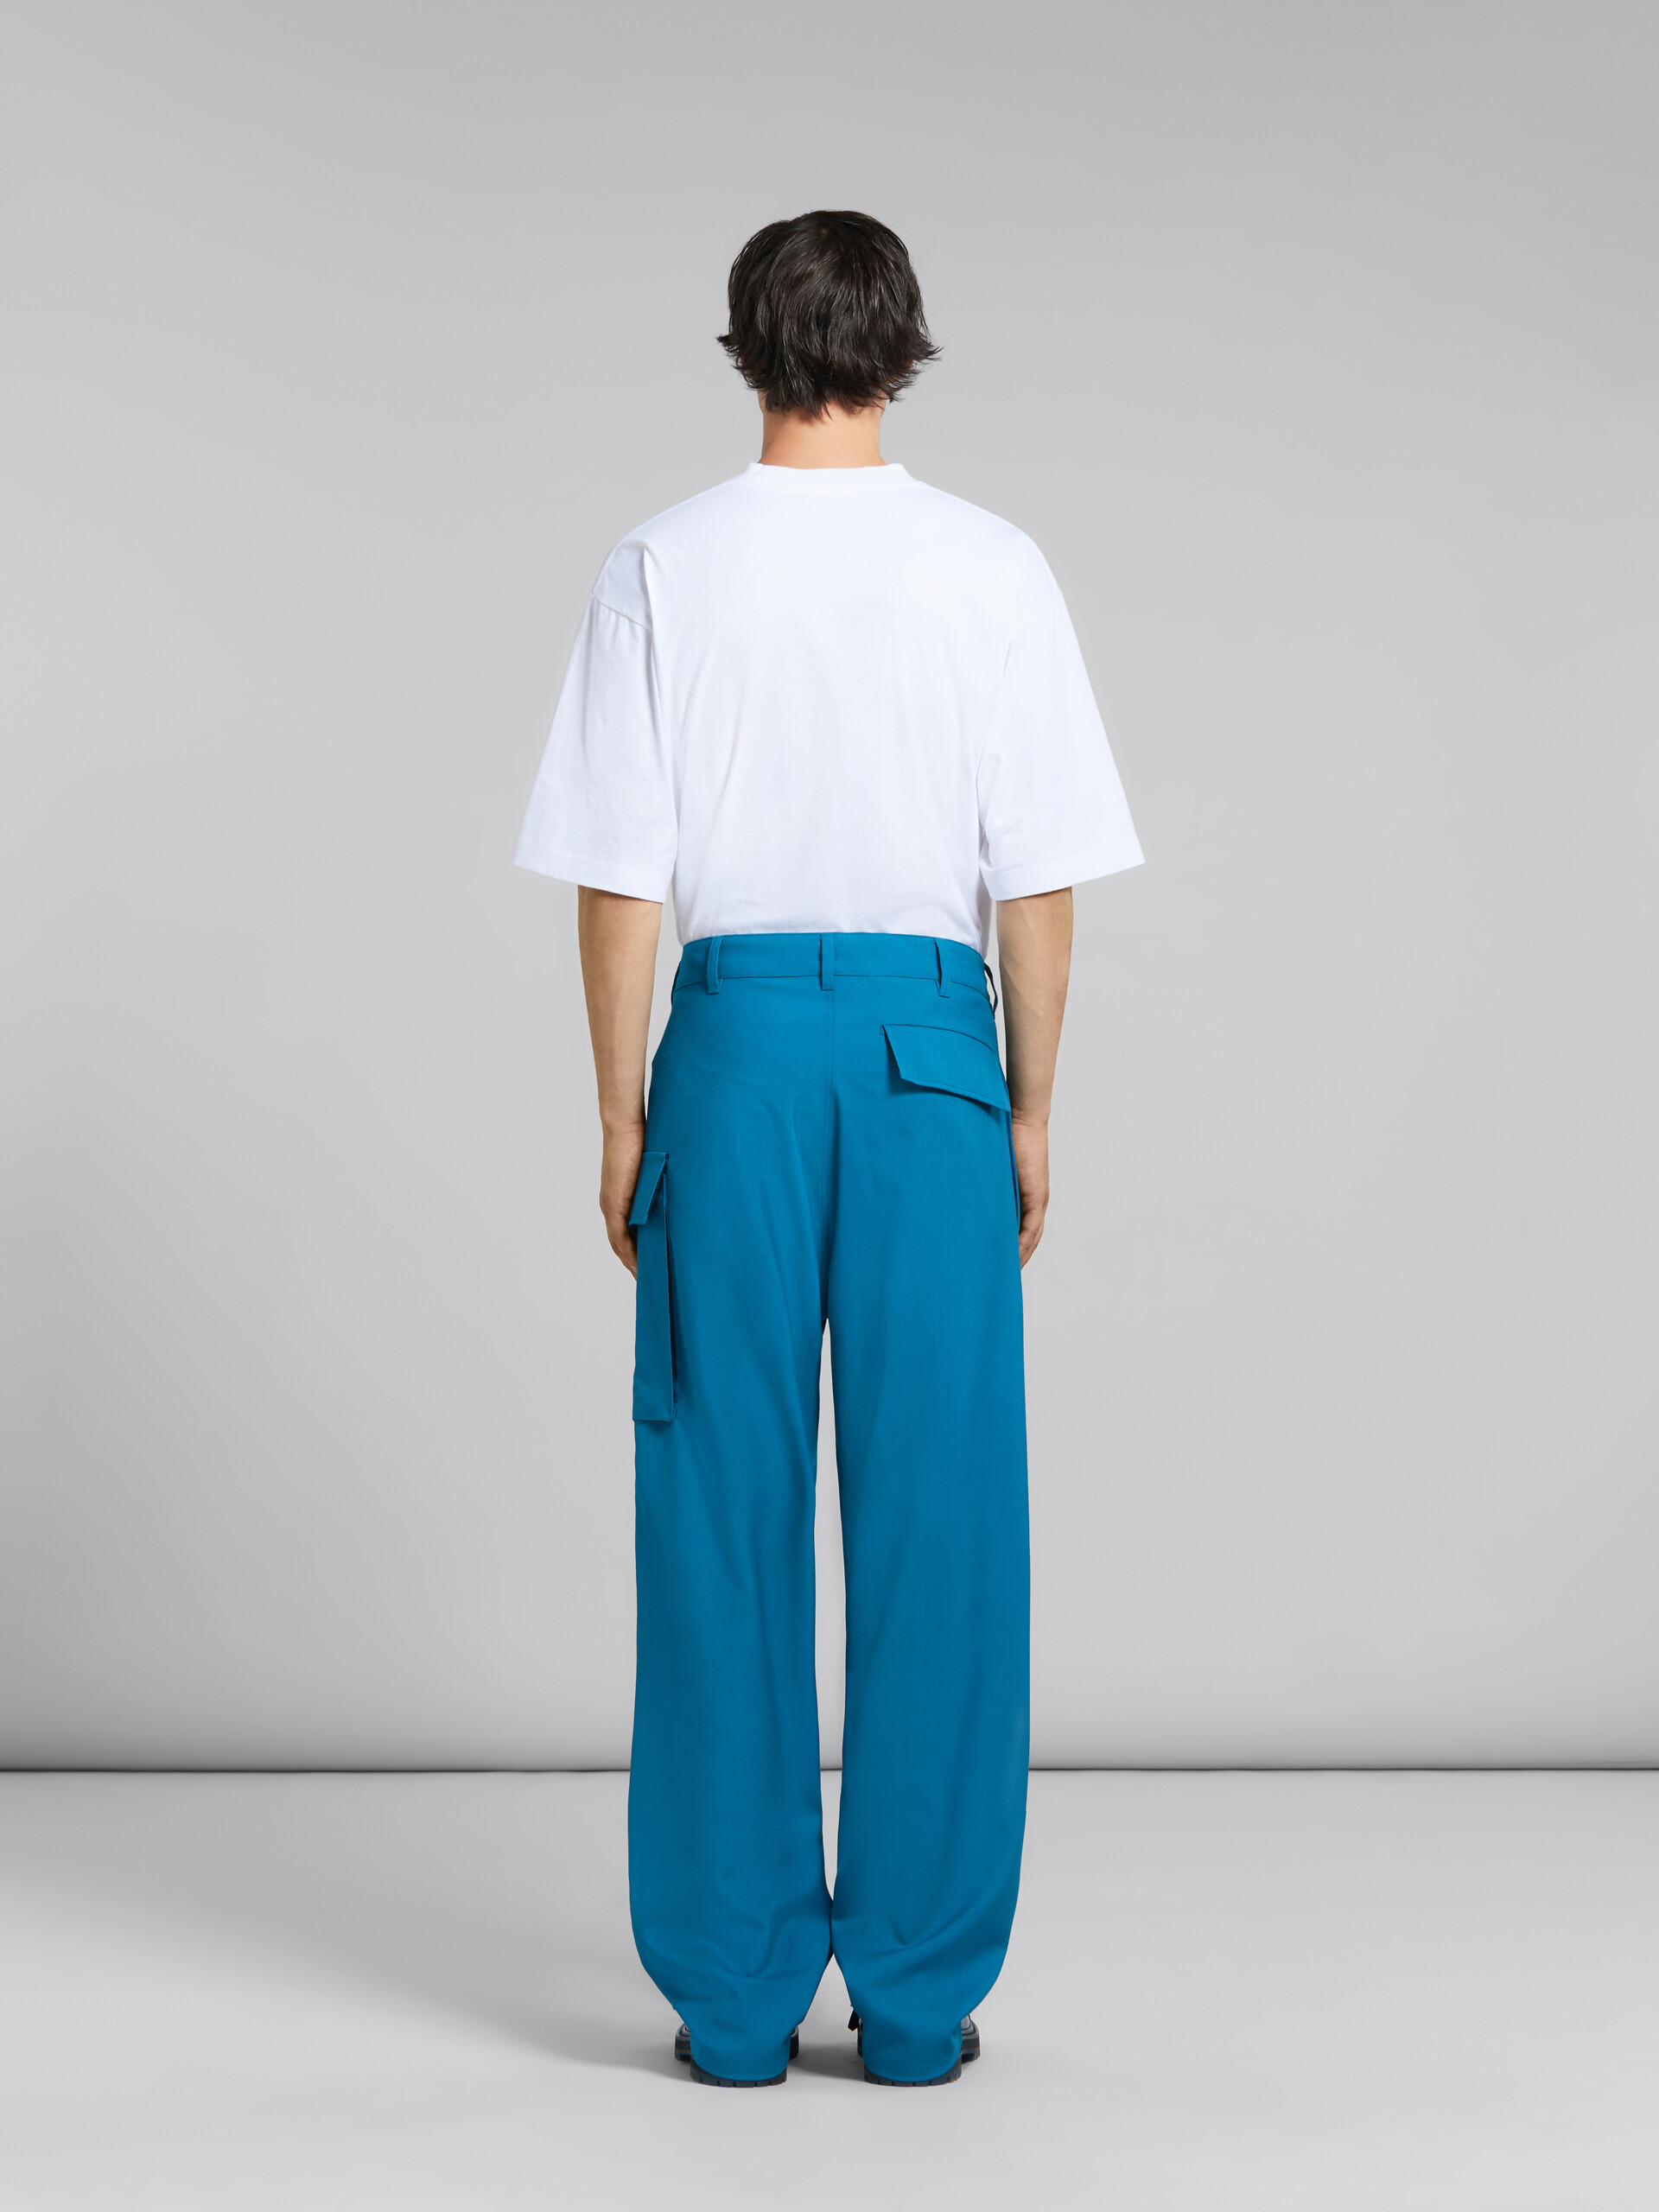 Blaugrüne Hose aus Tropenwolle mit Utility-Tasche - Hosen - Image 3